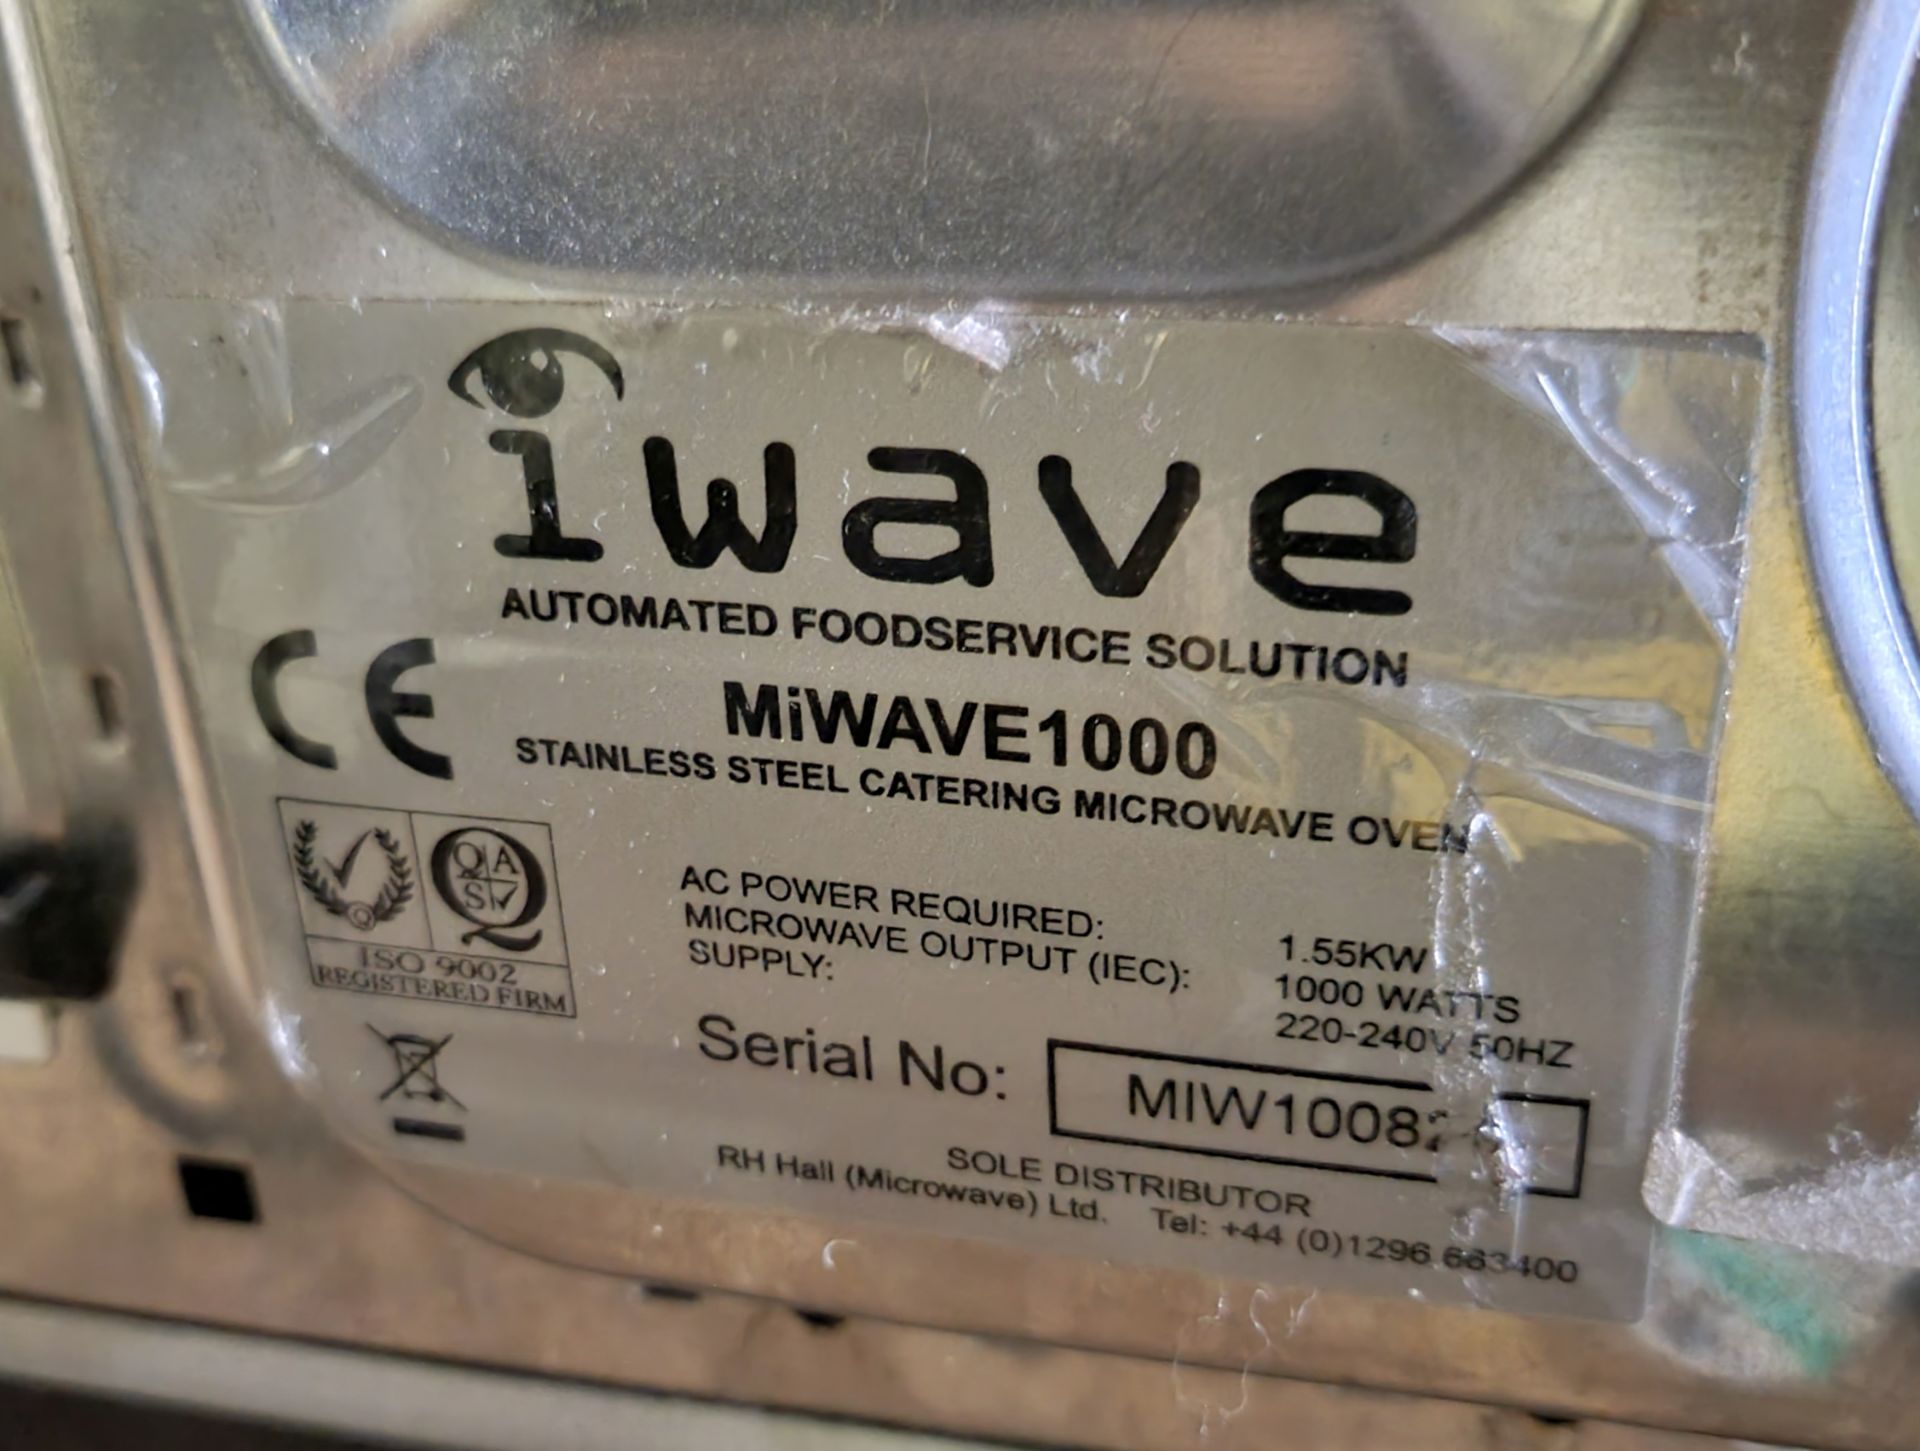 Iwave Maestrowave microwave - MiWave 1000 - 1.55kW - 1000 Watts - Image 6 of 6